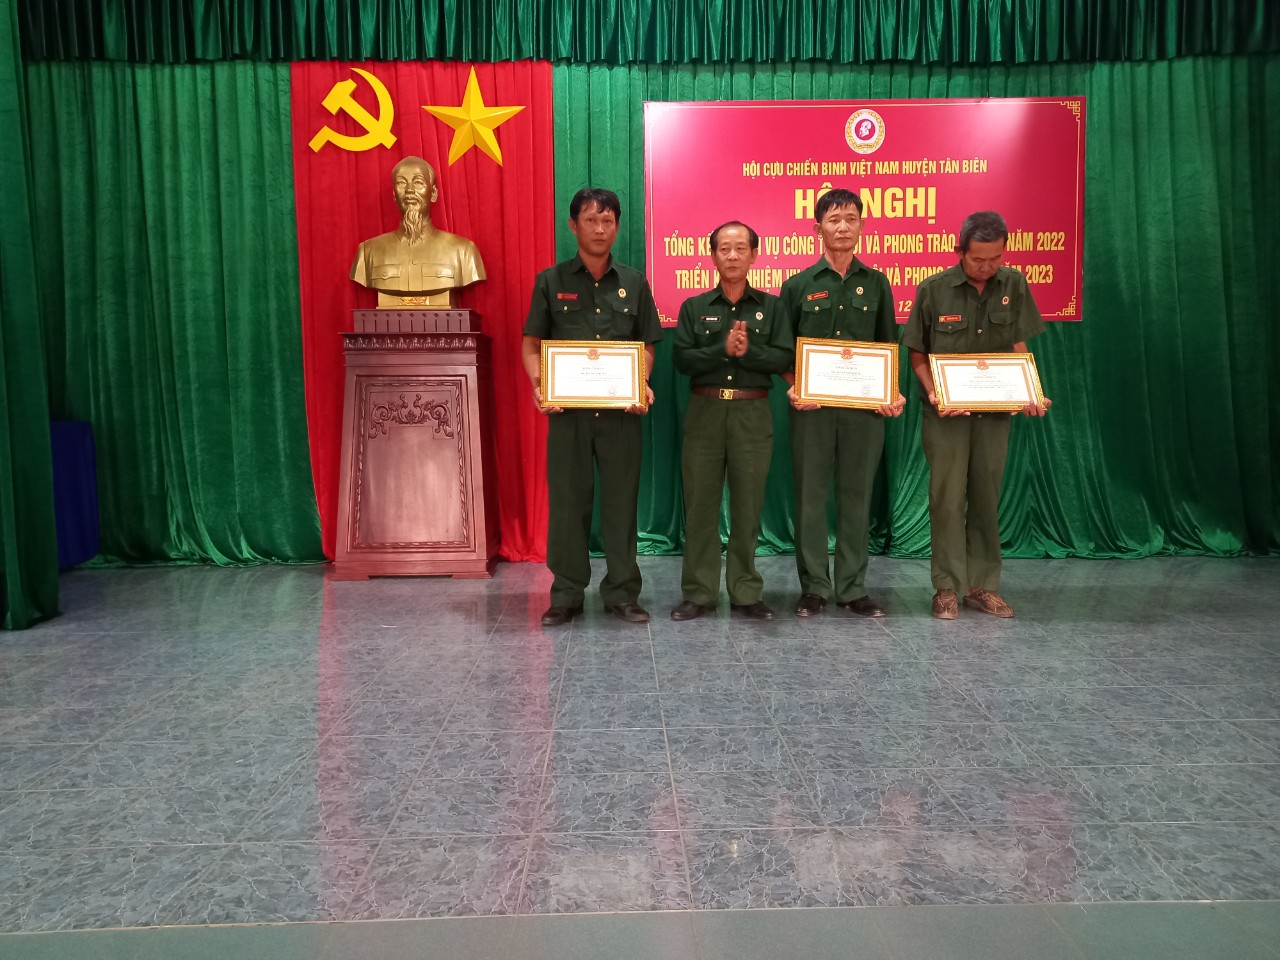 Hội Cựu chiến binh huyện Tân Biên tổng kết công tác hội năm 2022